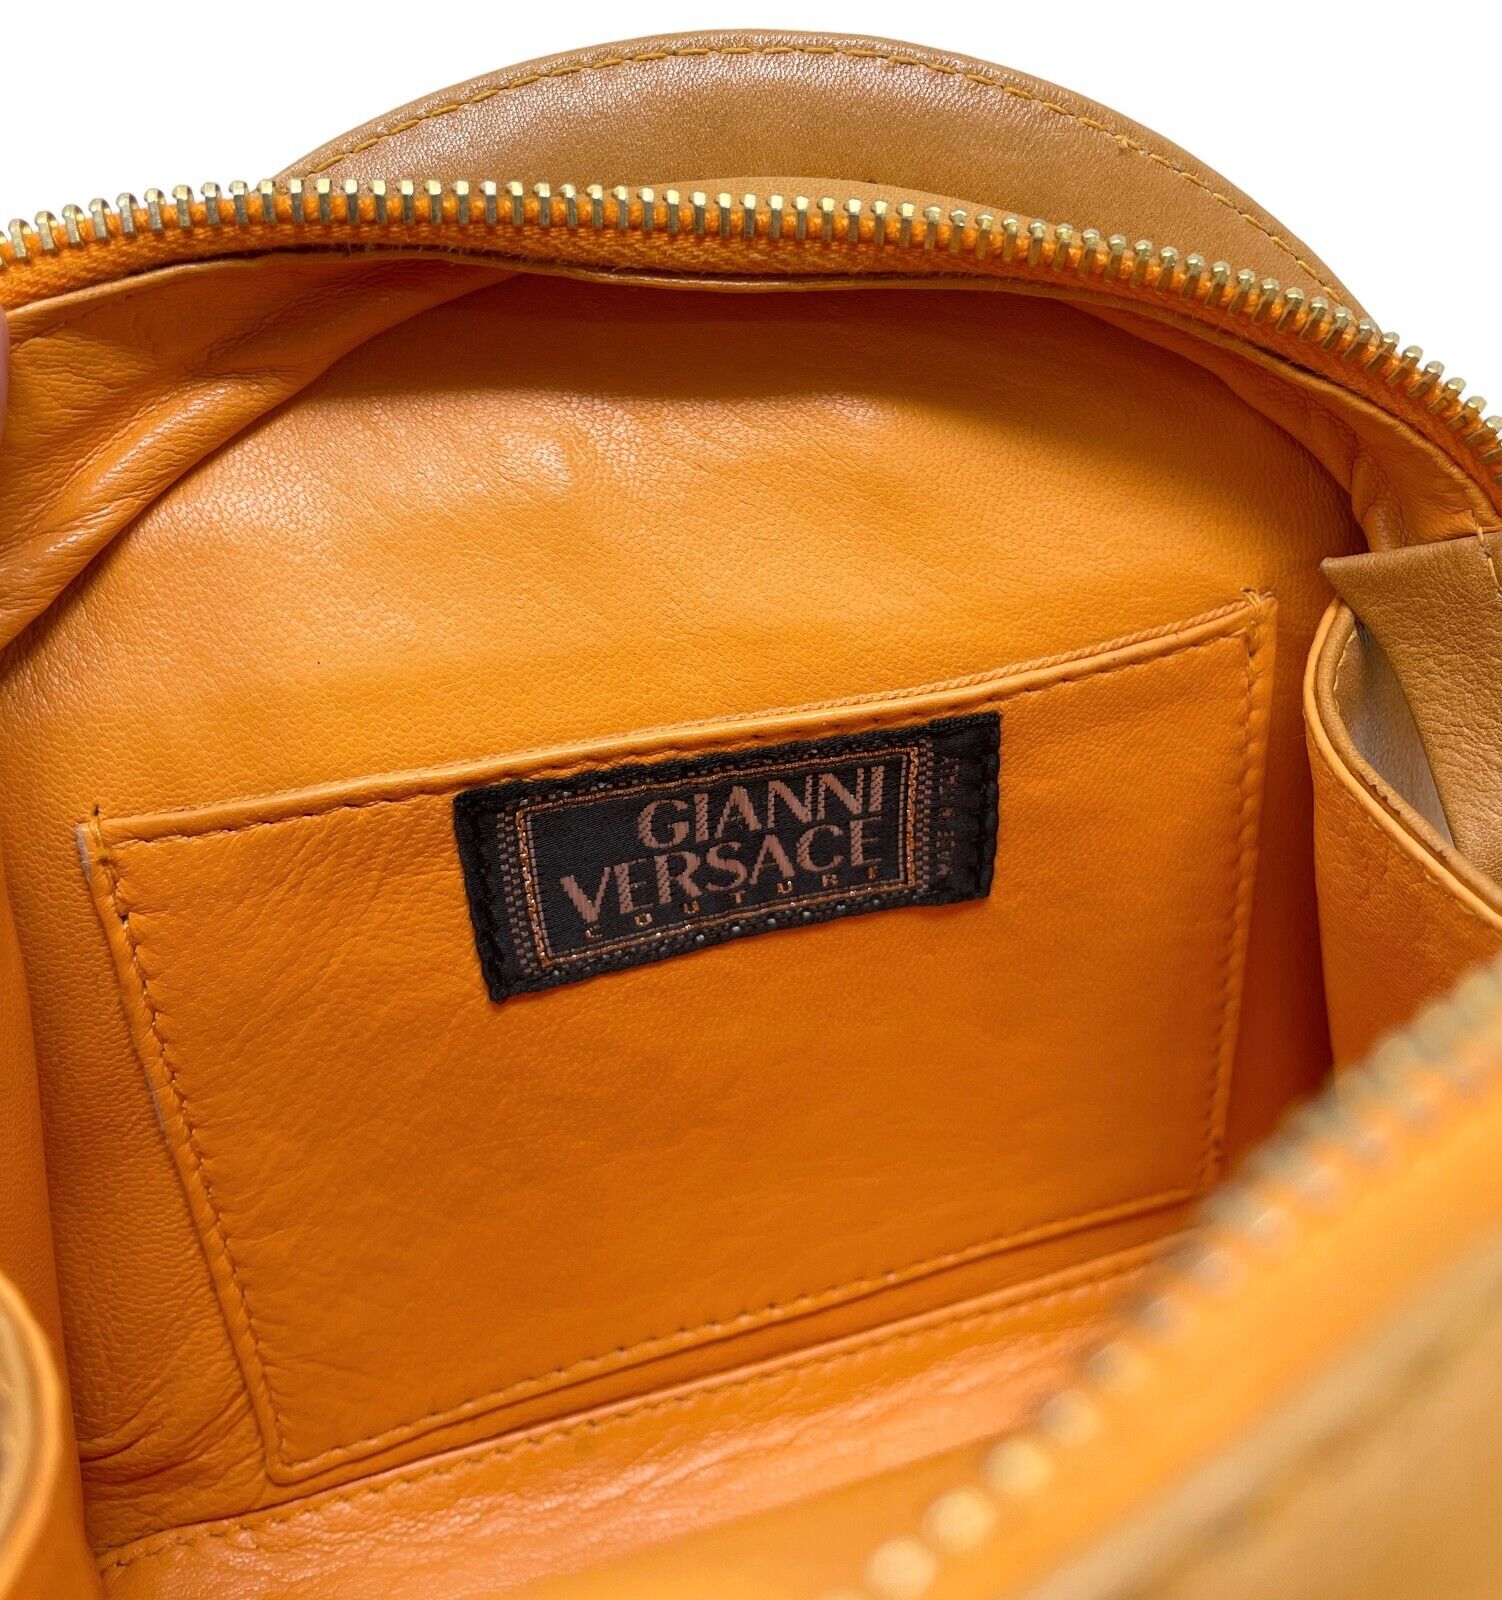 GIANNI VERSACE Vintage Medusa Handbag Shoulder Bag Brown Gold Leather Rank AB